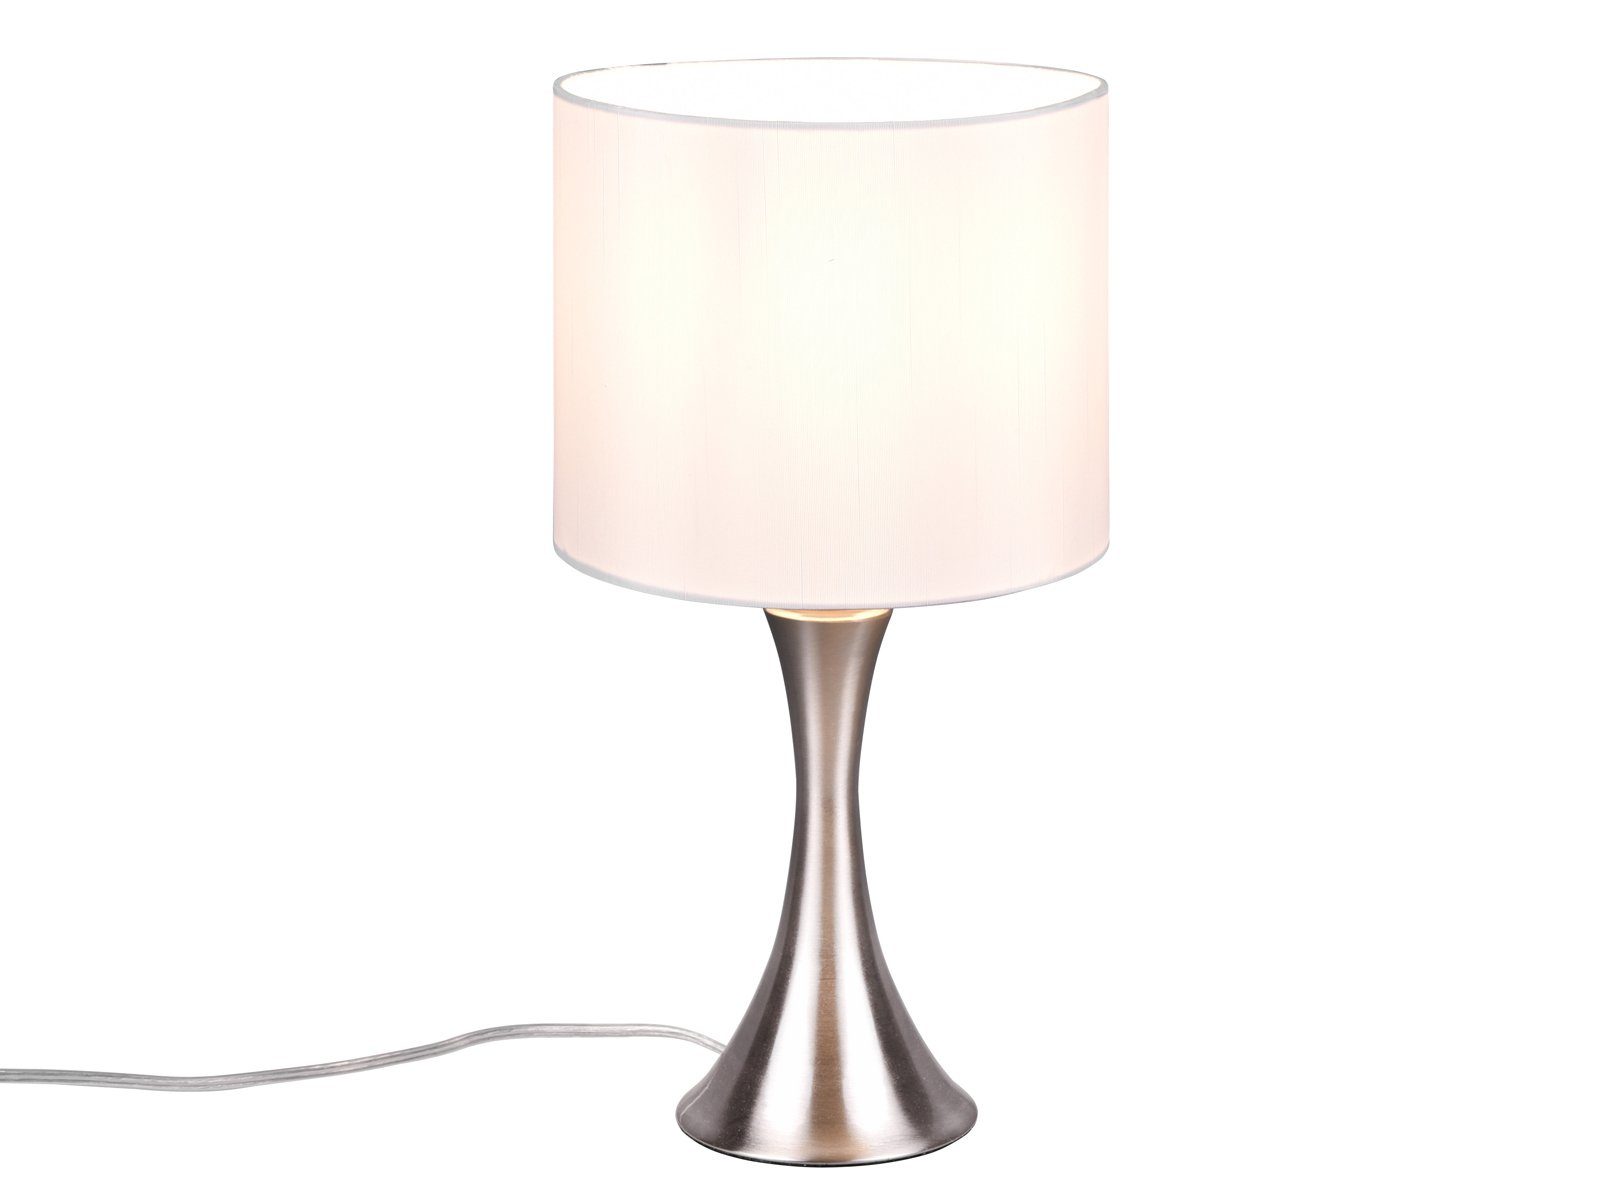 Warmweiß, Lampen-schirm Weiß matt Design-klassiker LED meineWunschleuchte / Stoff Weiß, Höhe wechselbar, Silber LED 37cm mit dimmbar Nachttischlampe, Dimmfunktion,